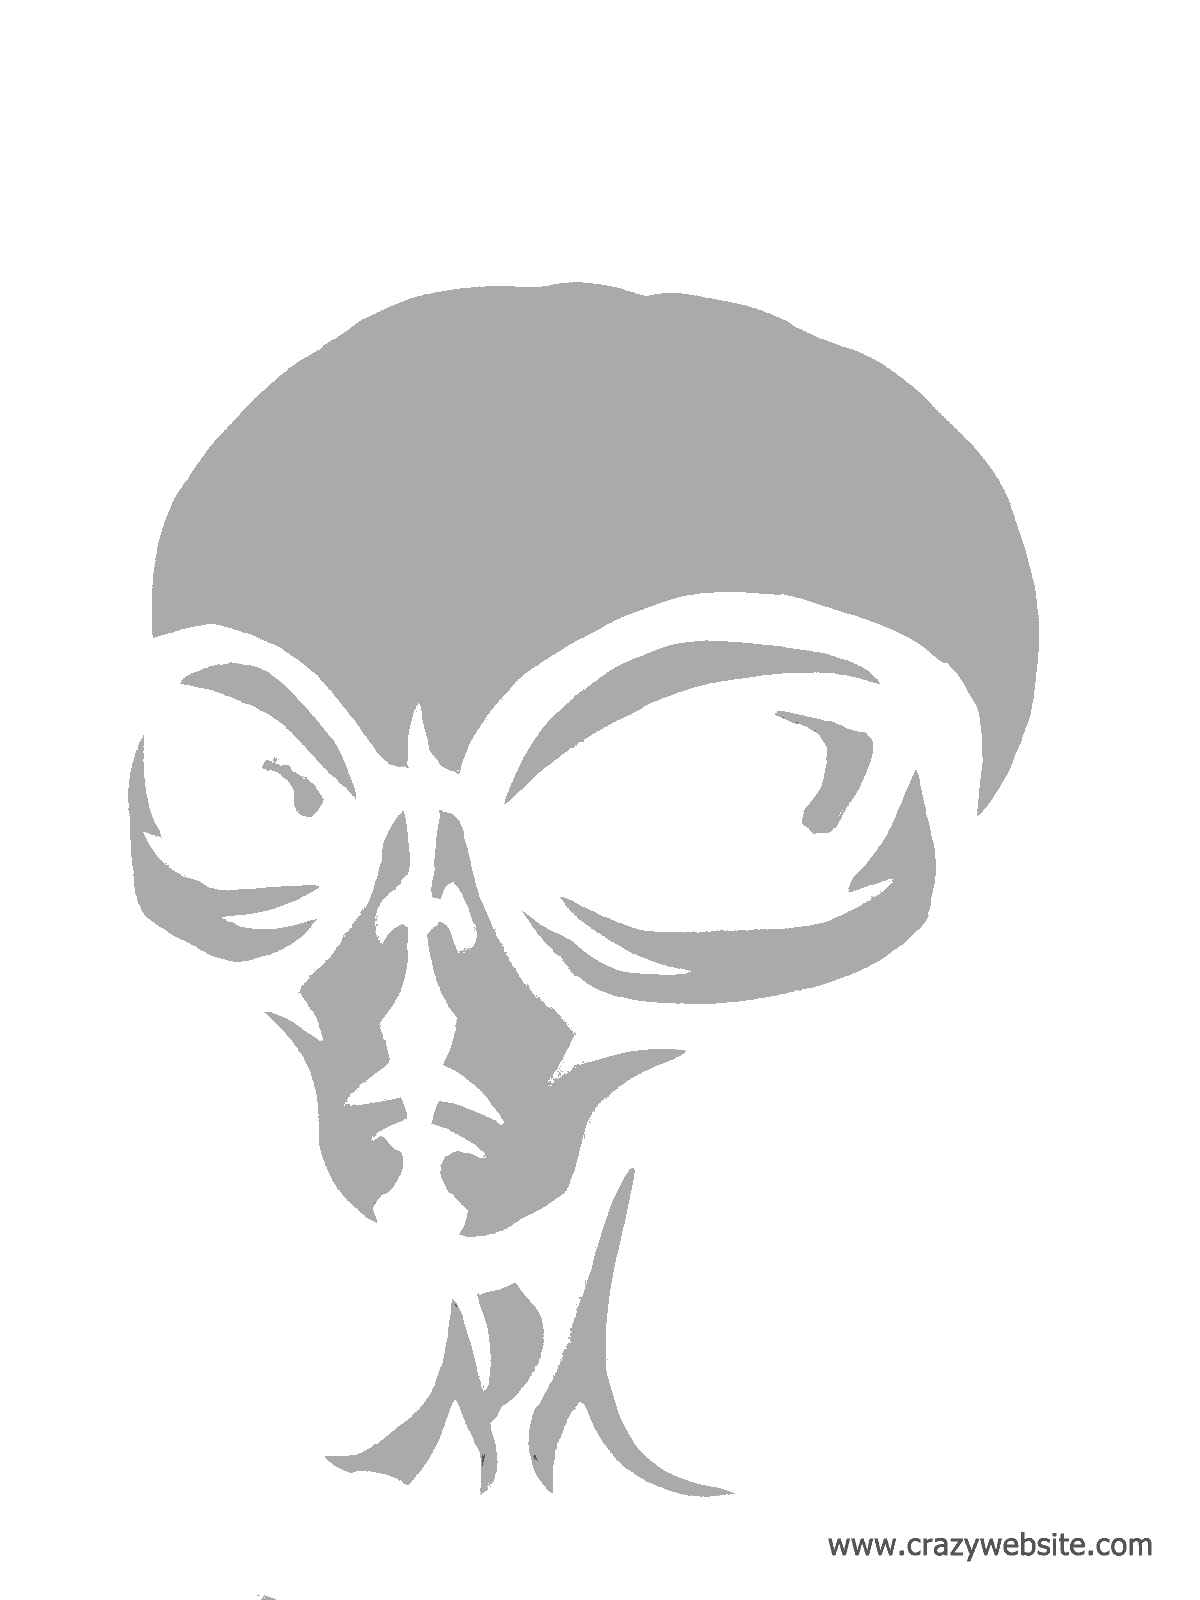 https://cdn.lowgif.com/small/42725f206c755d55-area-51-alien-pumpkin-stencil-idea-roswell-alien-pattern-1-gif-1200.gif